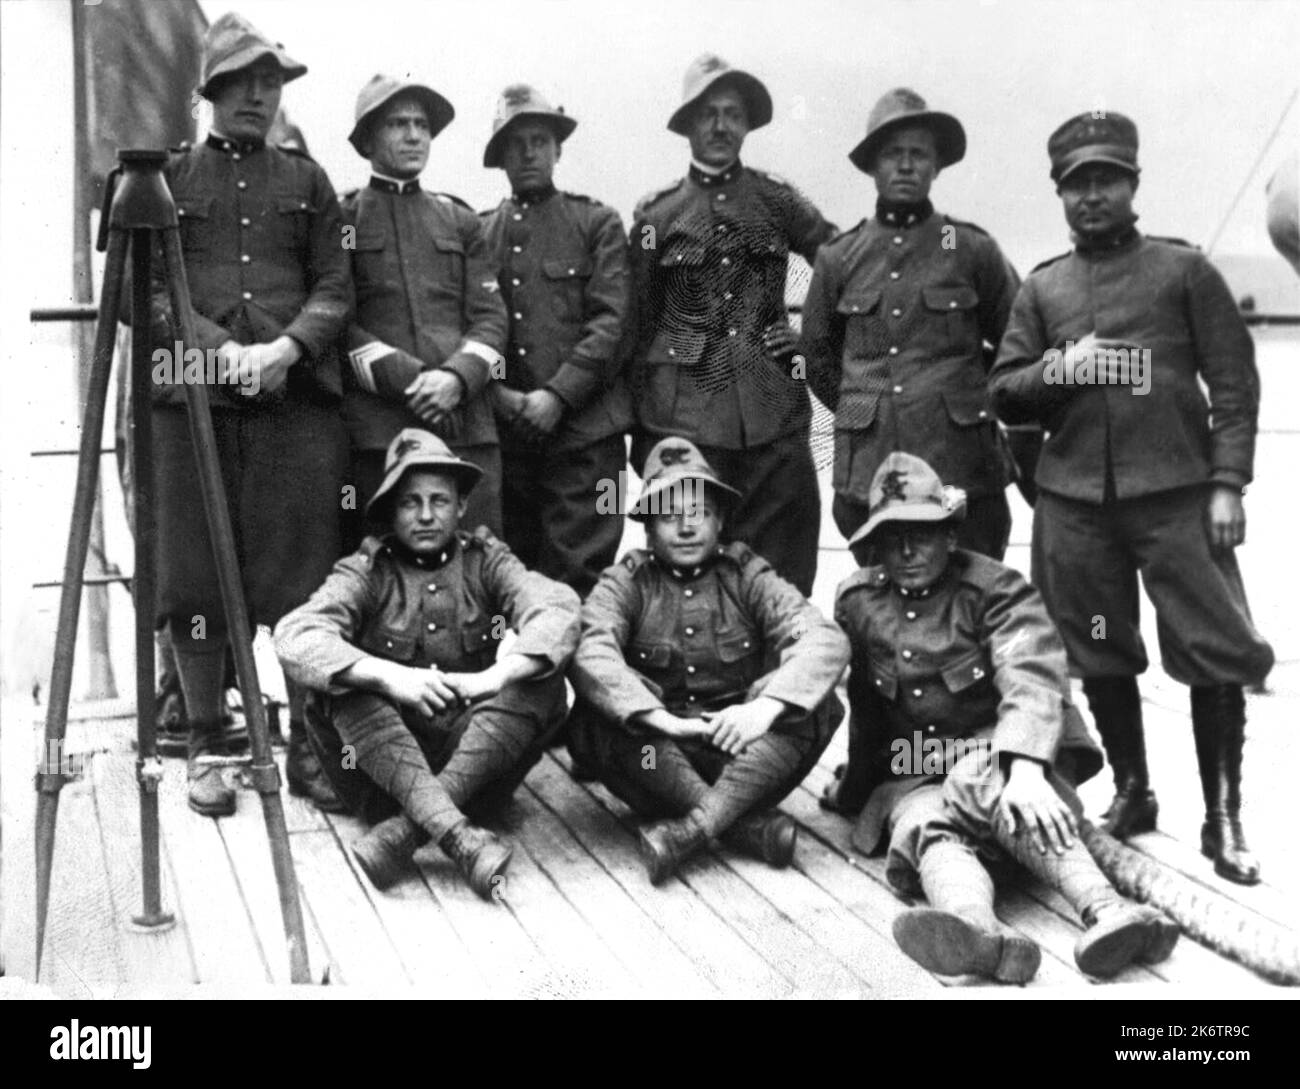 1928 , SCHWEDEN : die ALPINI Ski-Abteilung der italienischen Armee in UMBERTO NOBILE ( 1885 - 1978 ) Nordpolexpedition, unter dem Kommando von Kapitän GENNARO SORA (rechts, sitzend), Die später an den Rettungsaktionen des Luftschiffs Dirigibile ITALIA vom Città di Milano Support Ship teilnehmen würden. Unbekannter Fotograf. - ALPINE - ALPINO - LUFTSCHIFF - LUFTSCHIFF - POLAR EXPLORER - POLO NORD - SOCCORSO SUI GHIACCI - AVIAZIONE - LUFTFAHRT - ITALIA - ITALIEN - ESPLORAZIONE - SOLDATI - MILITARI - SOLDATEN - TRUPPE - INVASIONE --- ARCHIVIO GBB Stockfoto